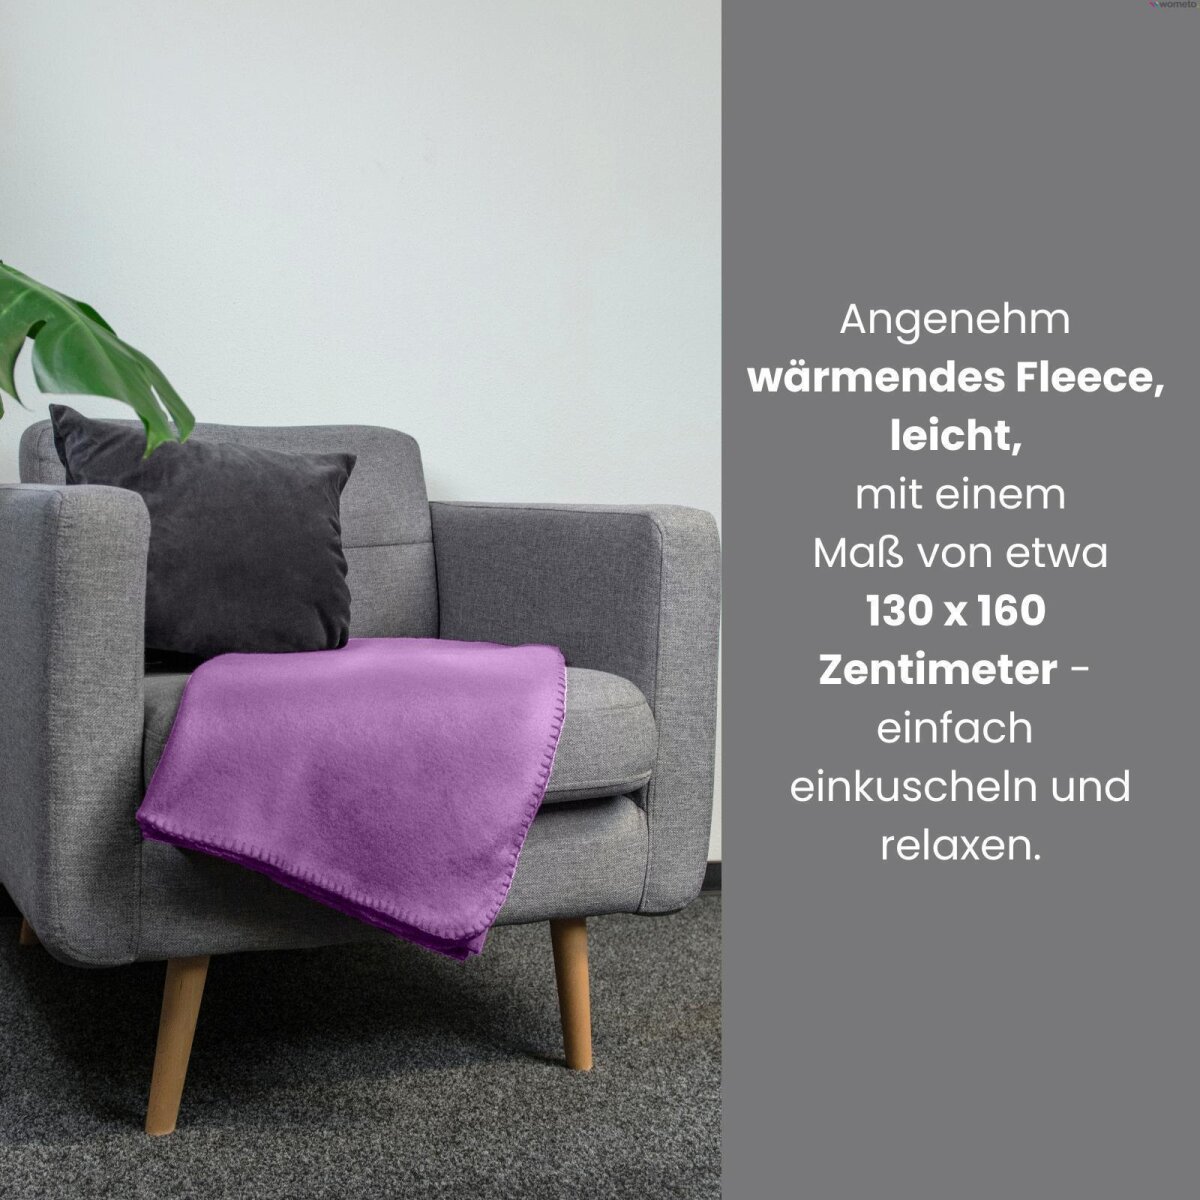 Fleecedecke 130x160 in div. Farben online kaufen